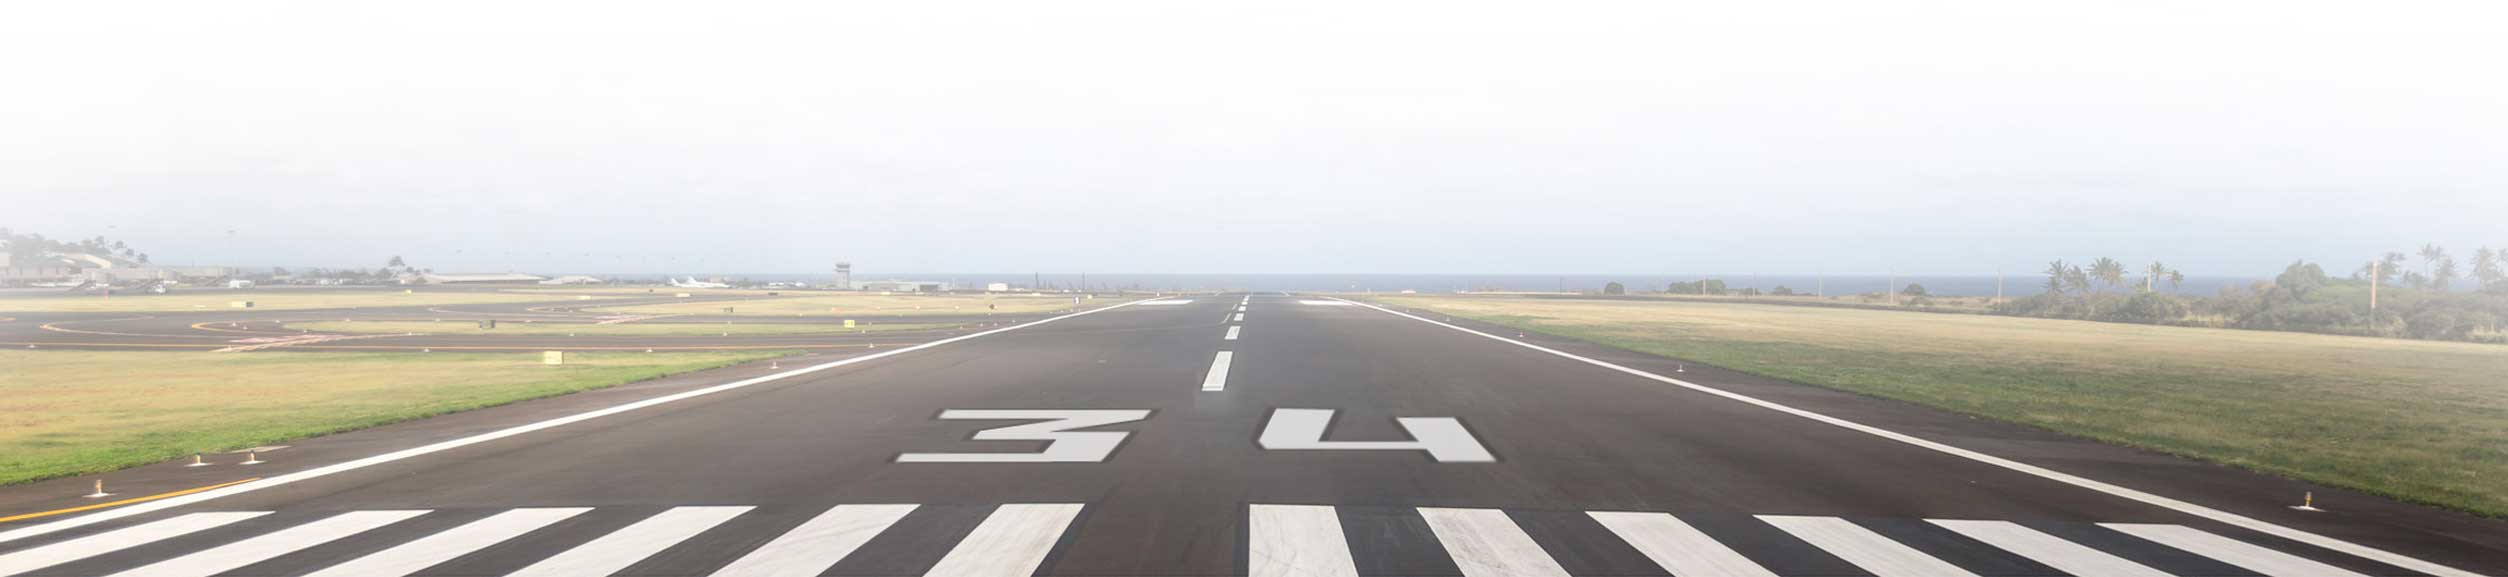 runway 34